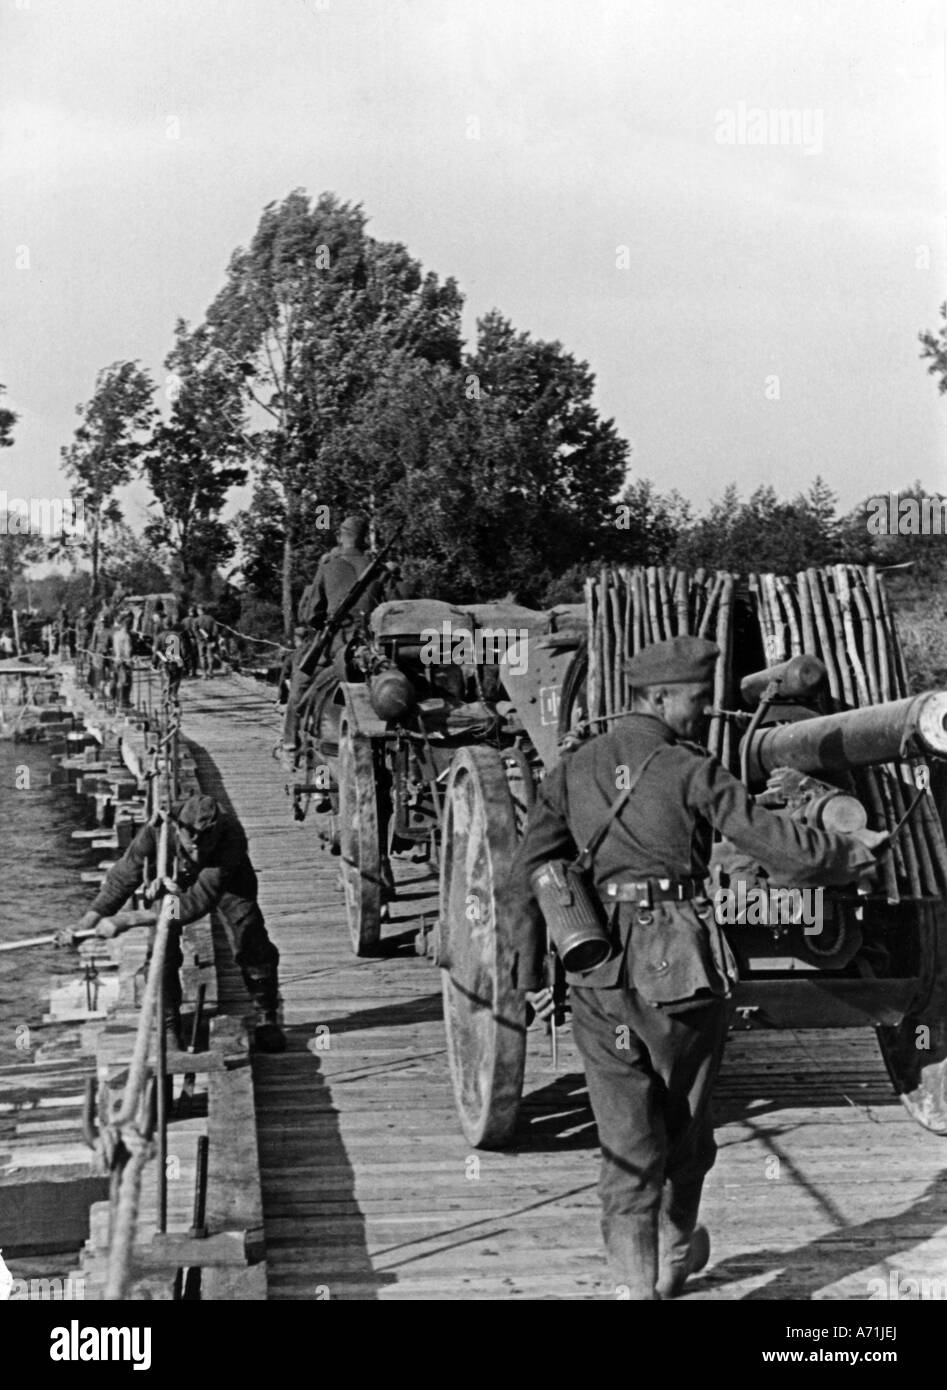 Eventi, Seconda guerra mondiale / seconda guerra mondiale, Russia 1941, avanzata tedesca, artiglieria trafilata da cavalli che attraversa un fiume su un ponte realizzato localmente, Foto Stock